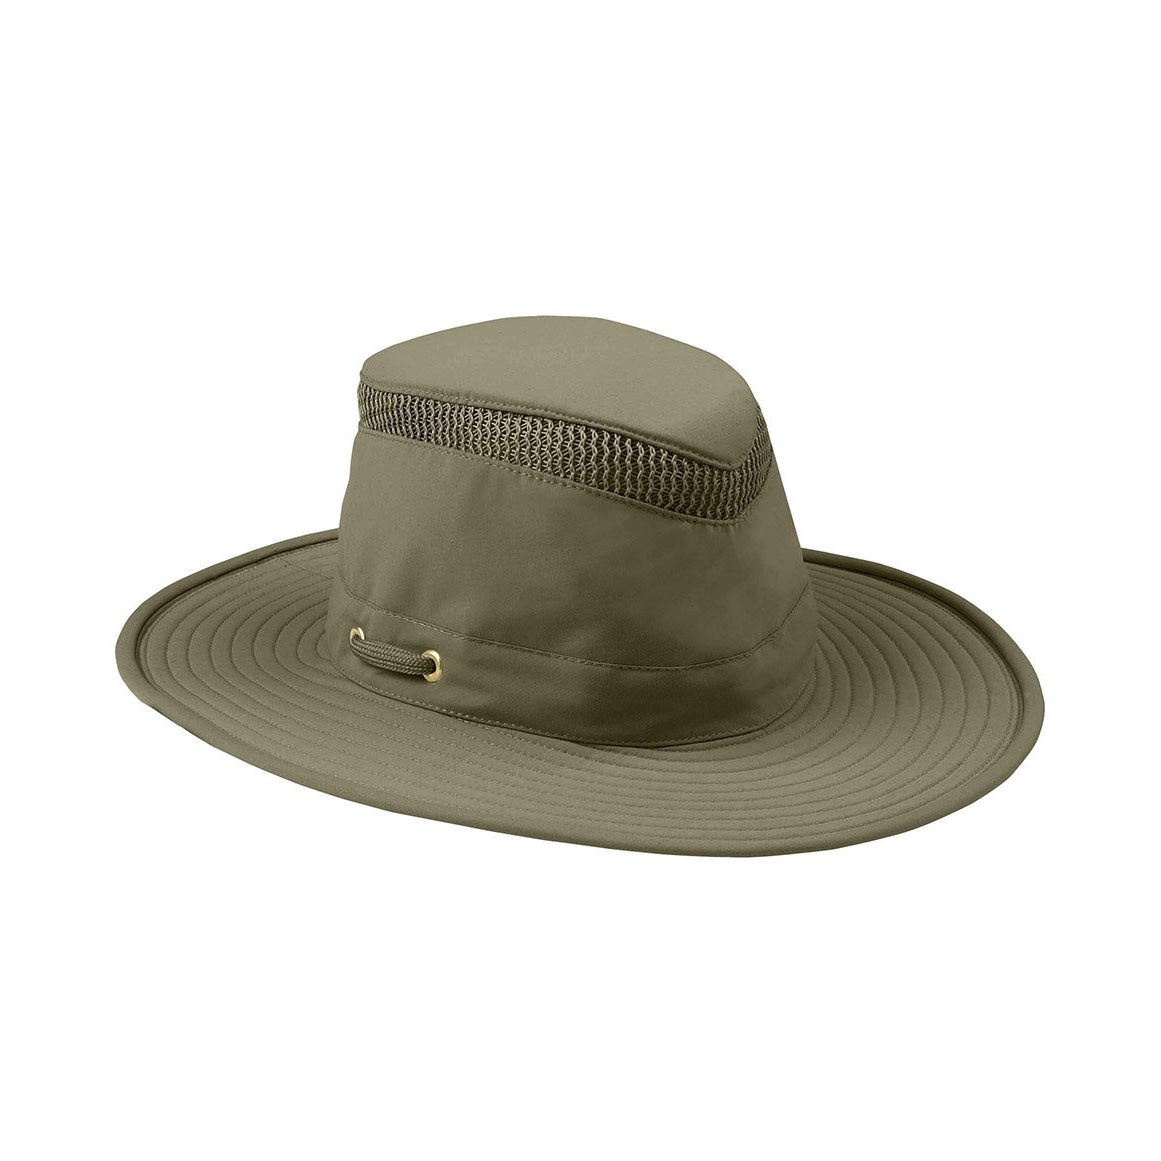 Ковбойская шляпа олива. Популярная шляпа